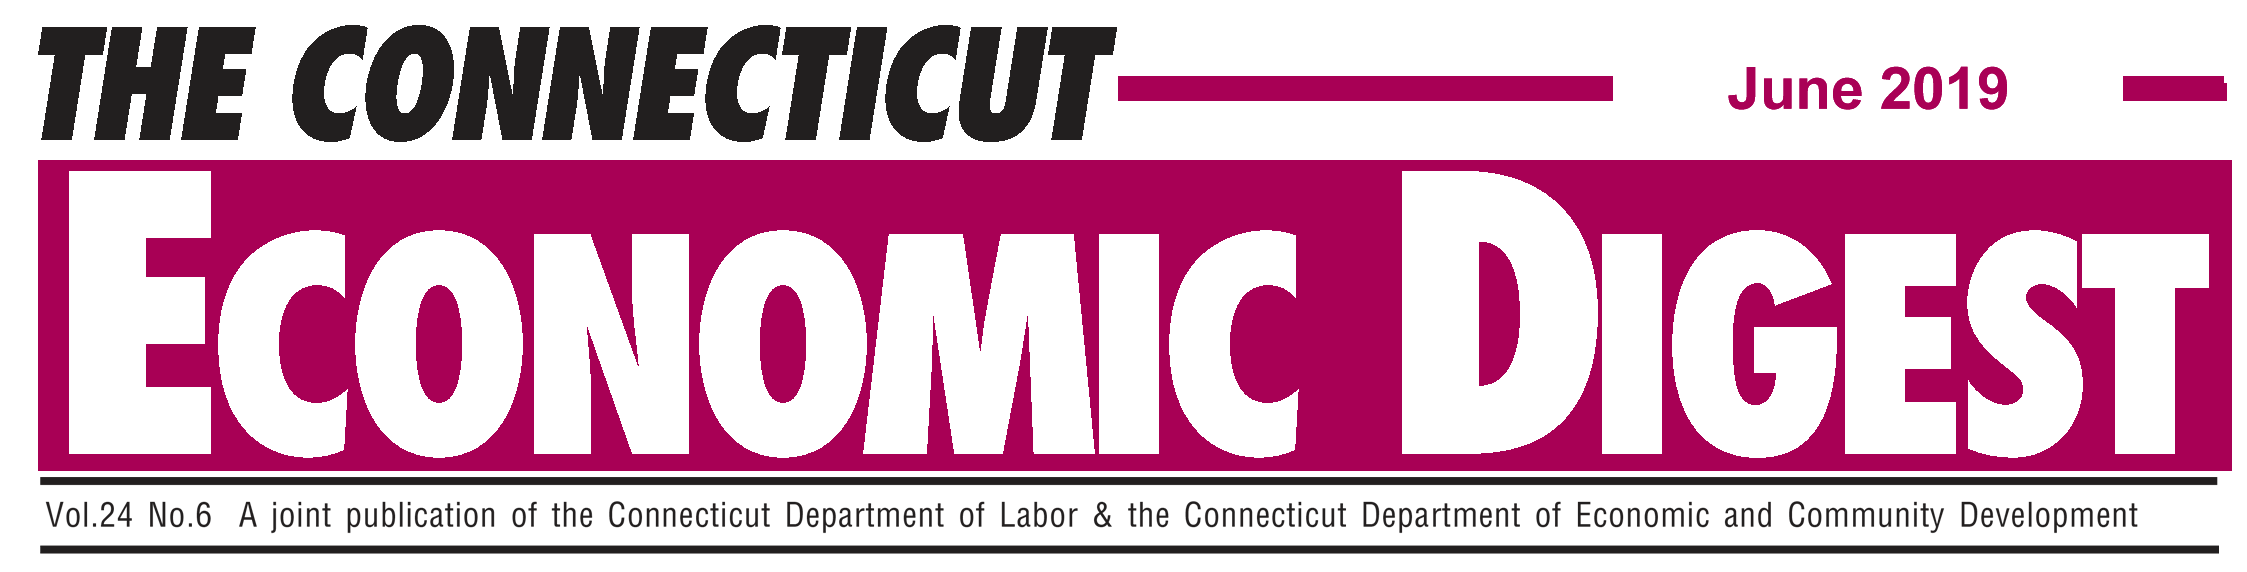 June 2019 Connecticut Economic Digest